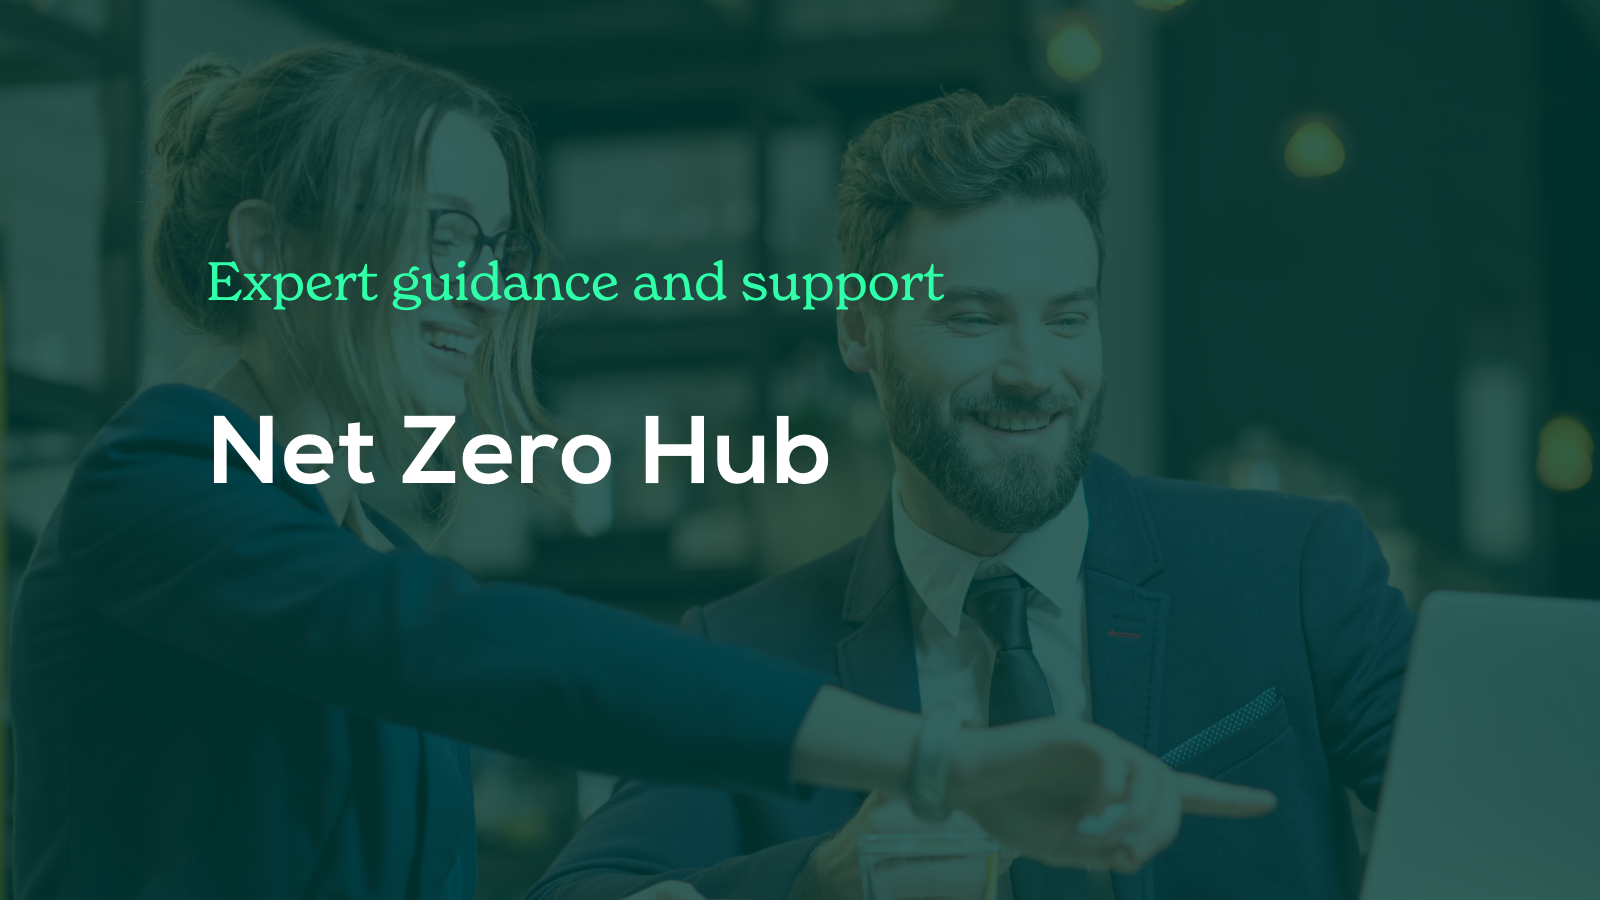 Net Zero Hub